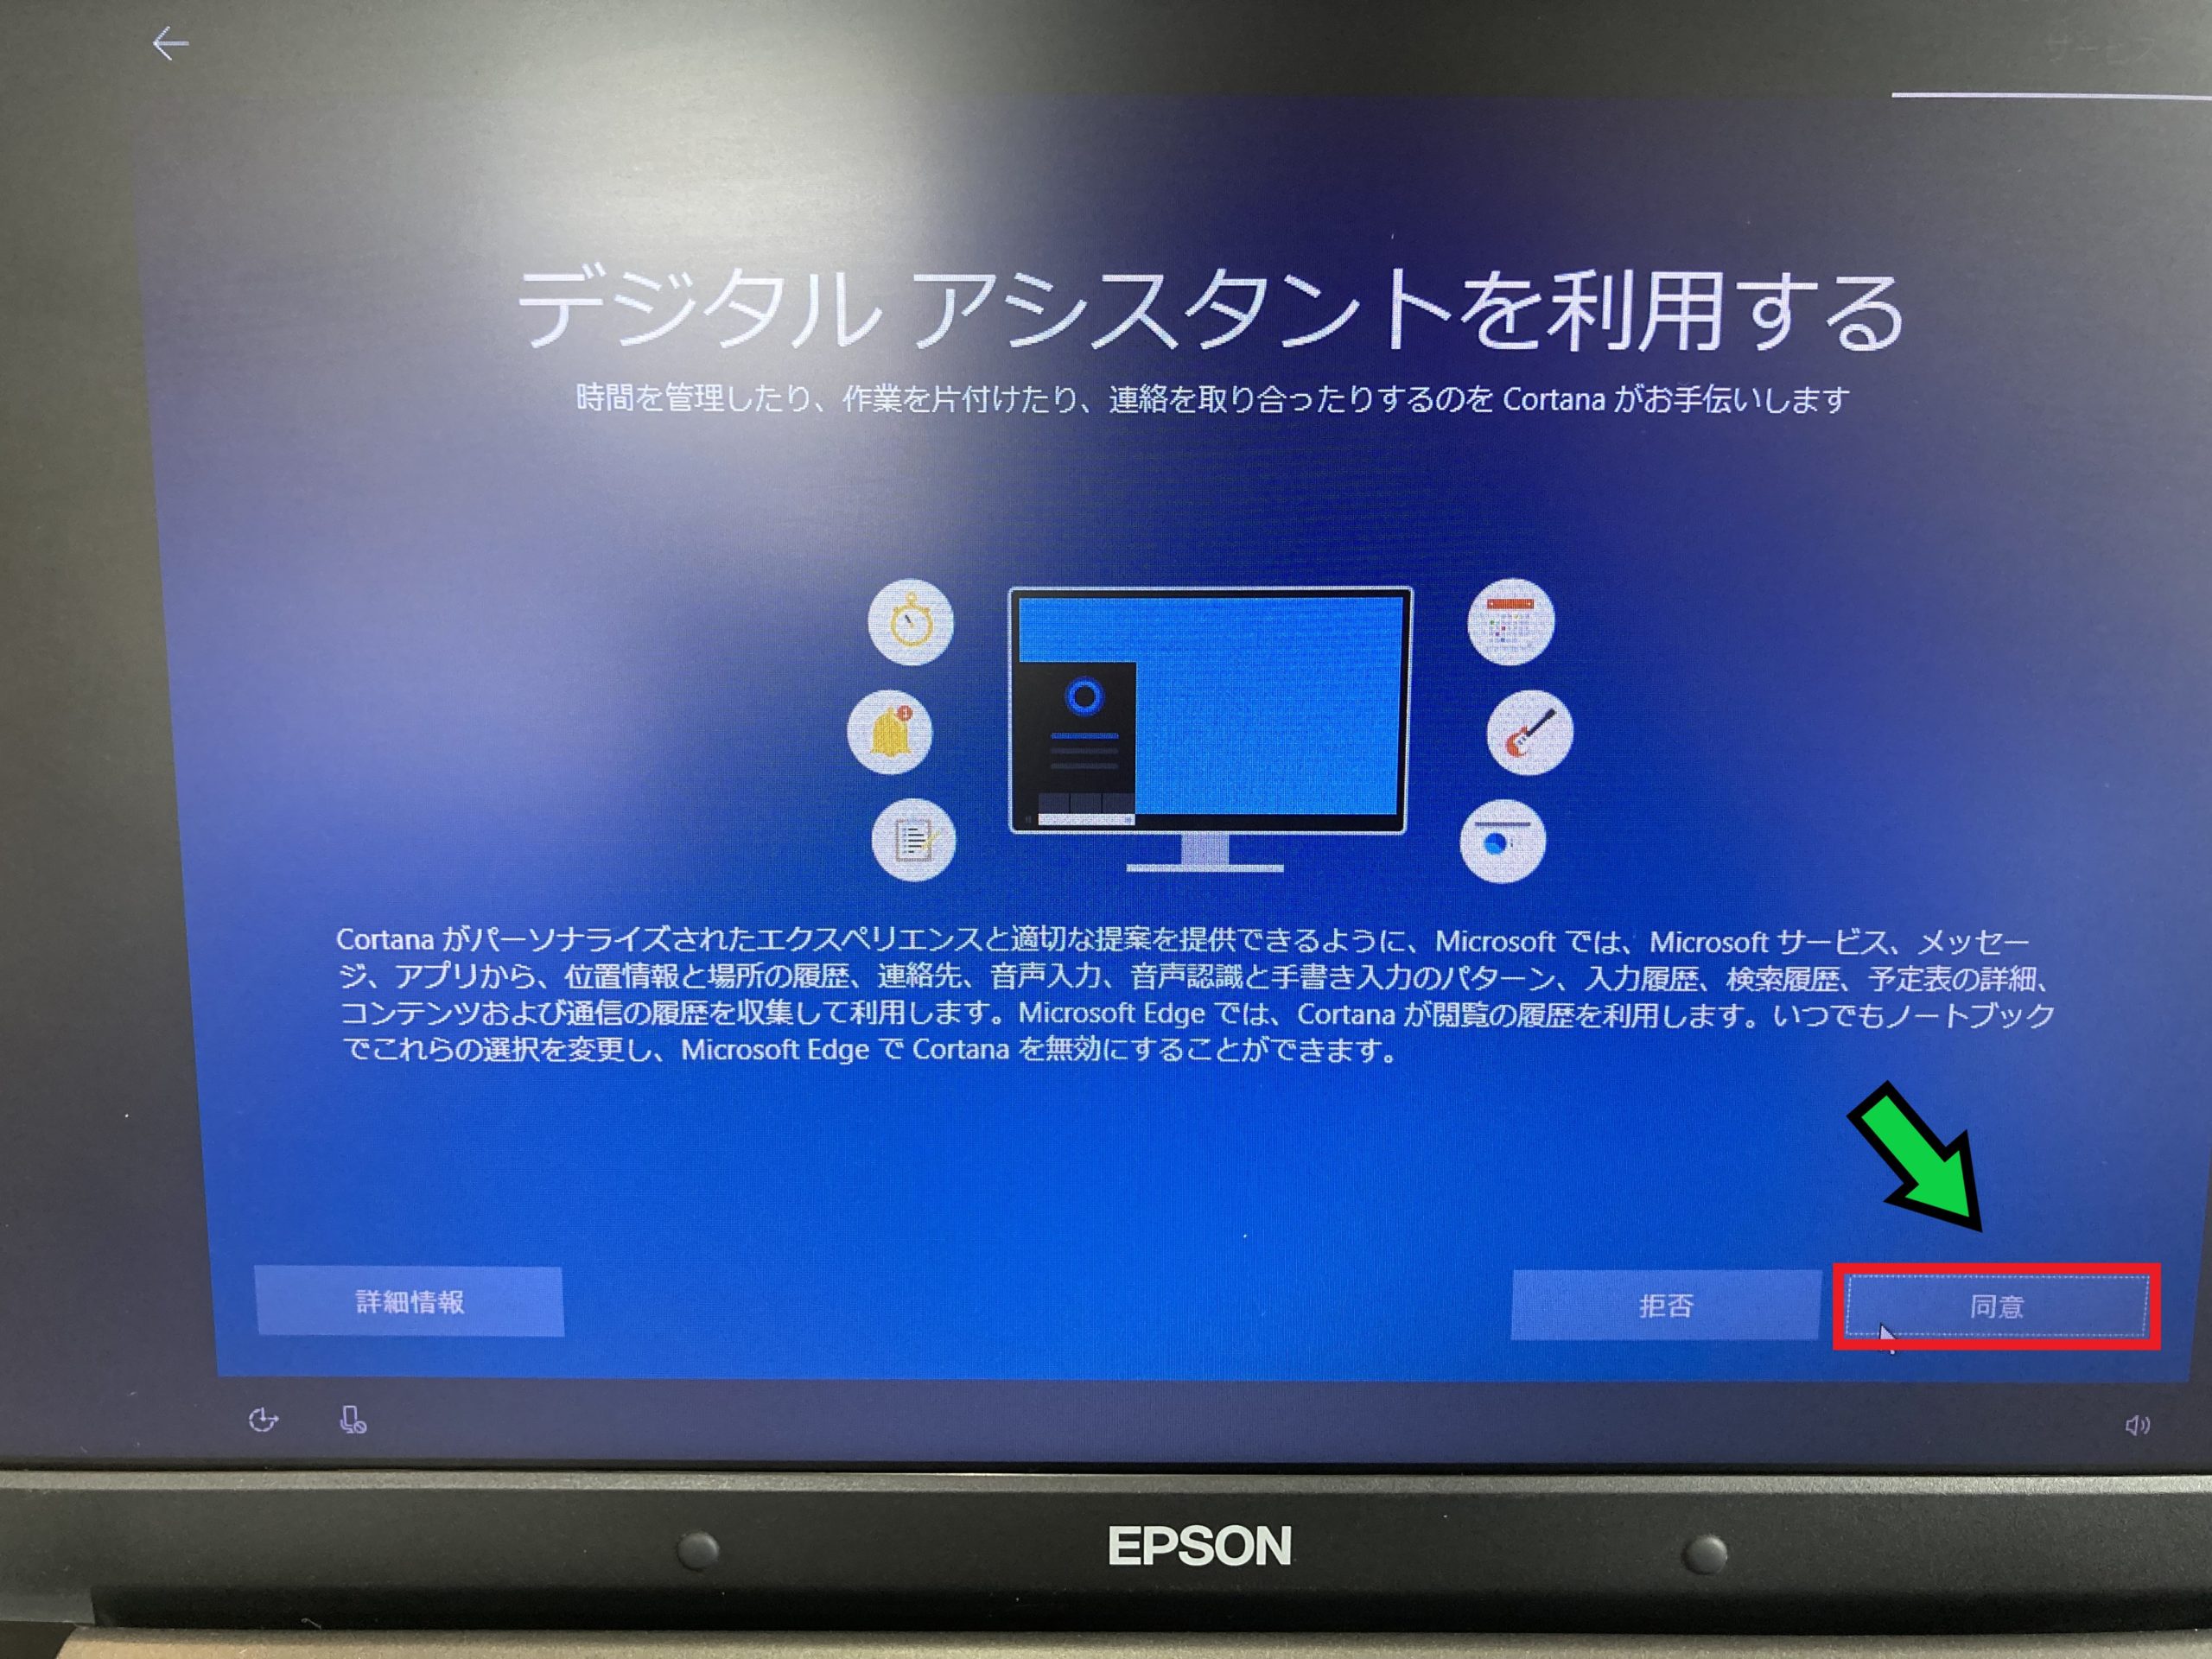 【プロが解説】失敗しないWindows10の初期セットアップ方法